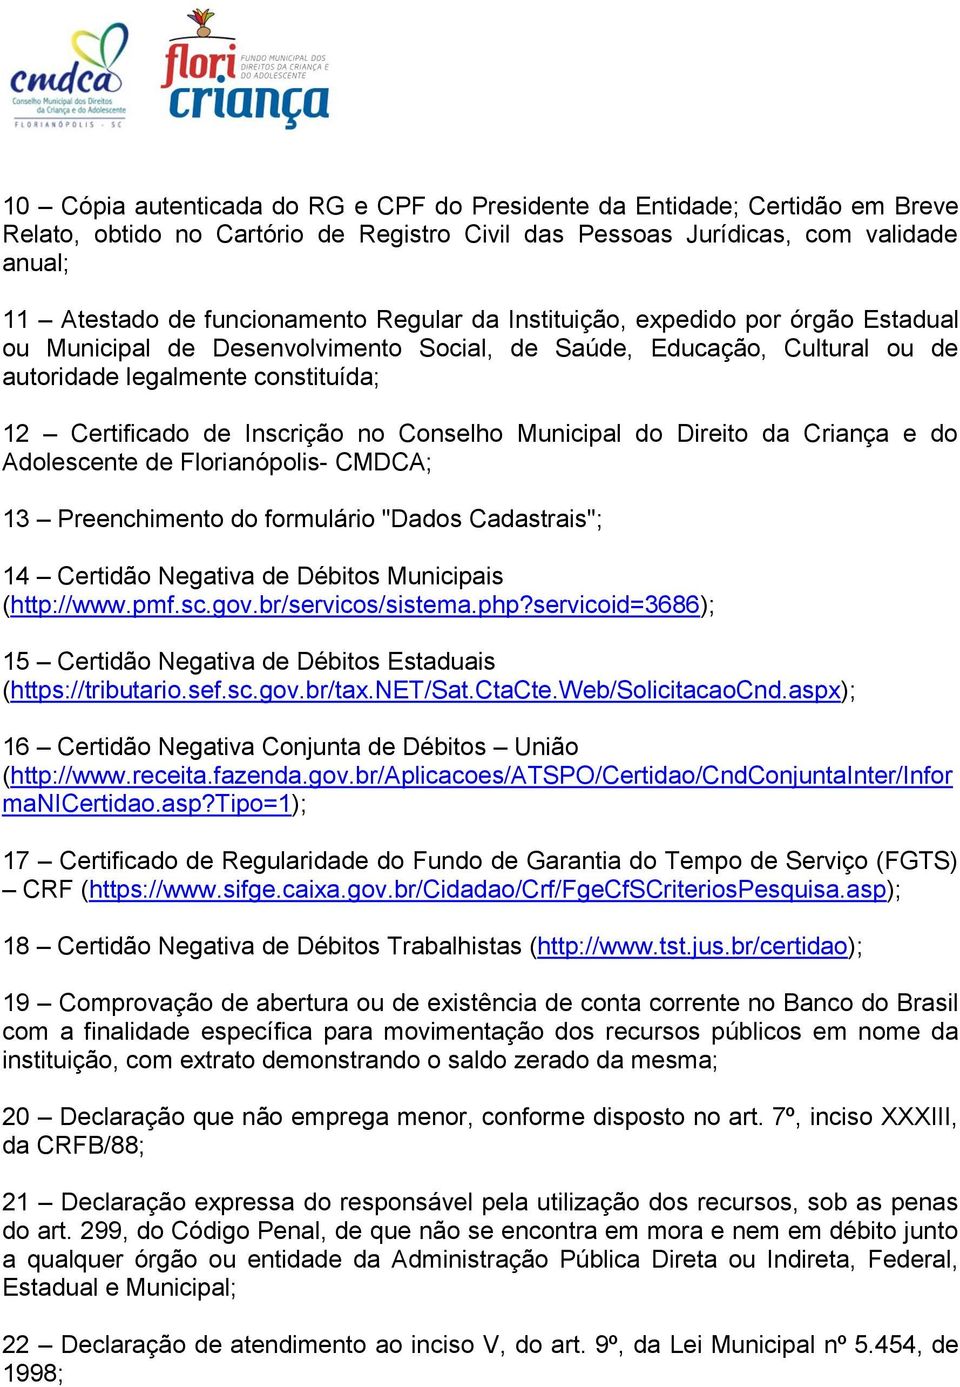 Conselho Municipal do Direito da Criança e do Adolescente de Florianópolis- CMDCA; 13 Preenchimento do formulário "Dados Cadastrais"; 14 Certidão Negativa de Débitos Municipais (http://www.pmf.sc.gov.